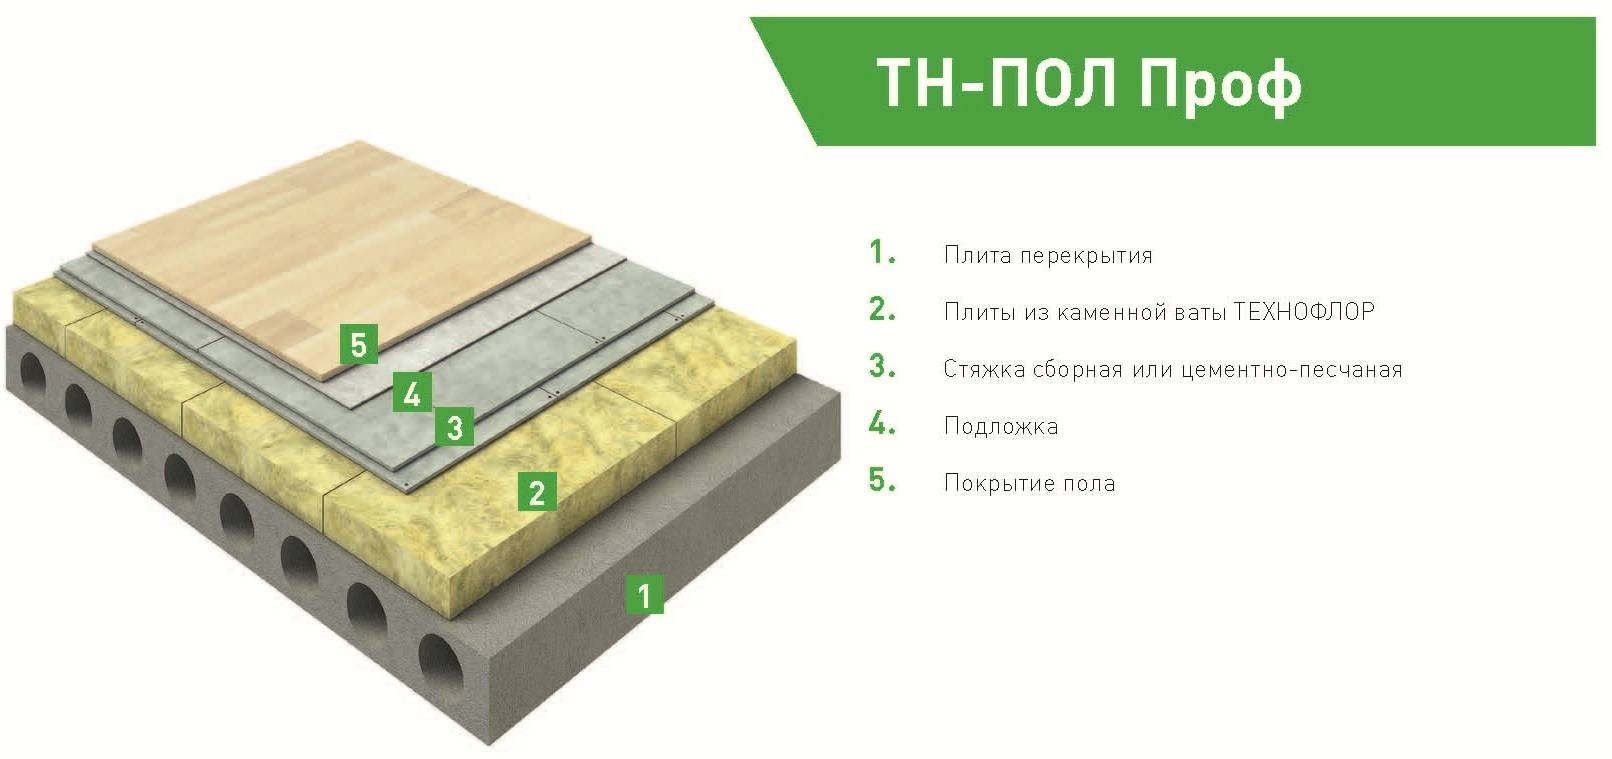 Утеплитель для пола по бетону - разбираемся в разнообразии материалов